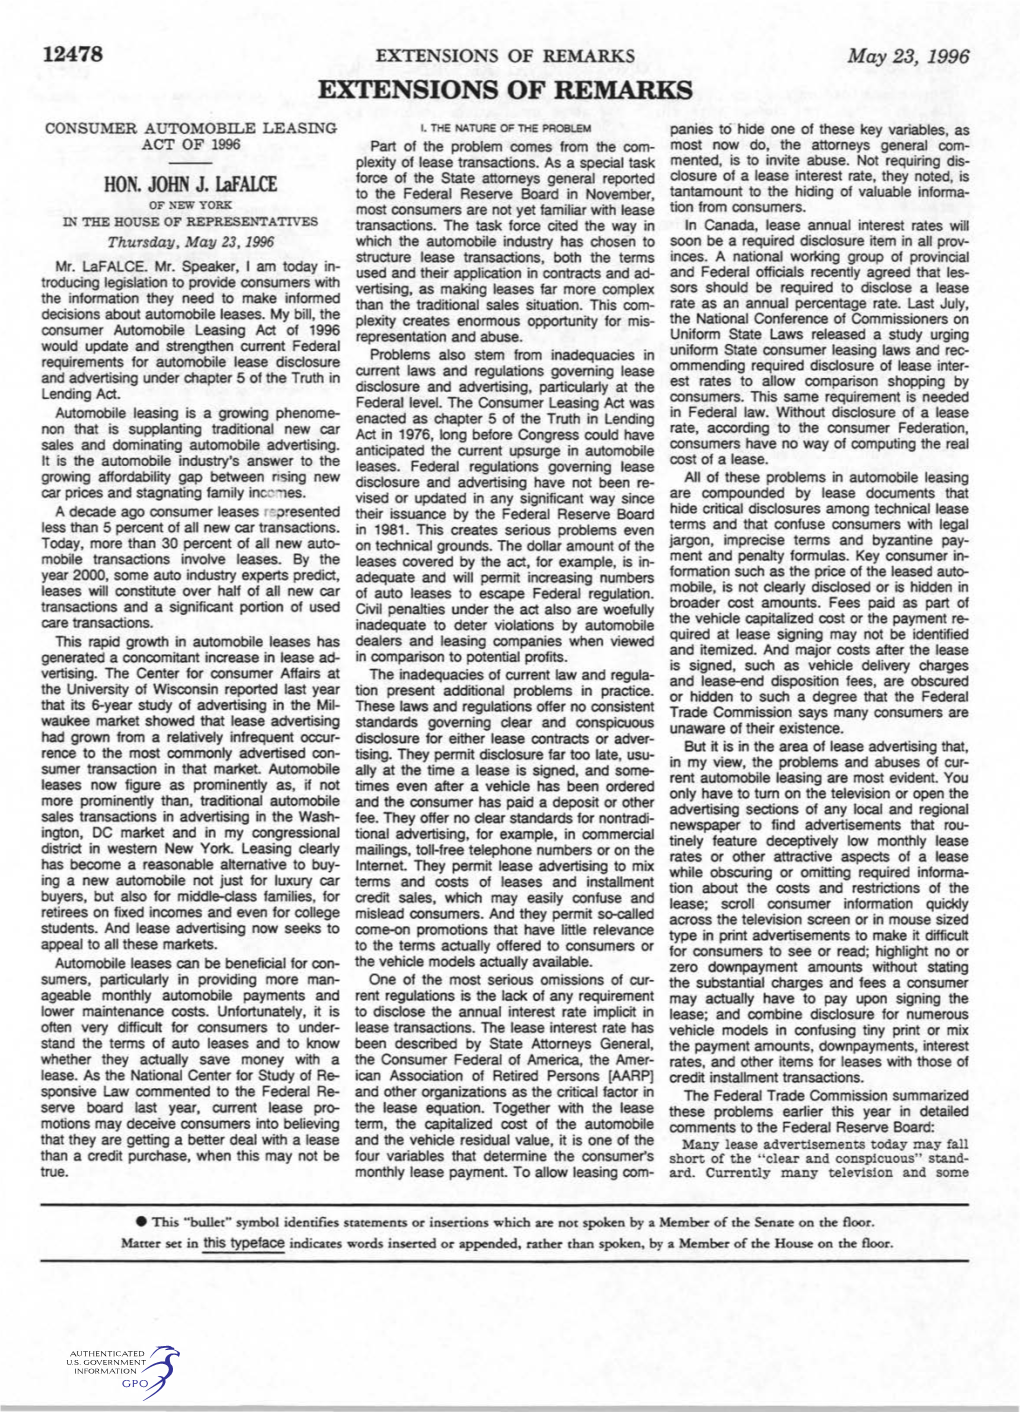 EXTENSIONS of REMARKS May 23, 1996 EXTENSIONS of REMARKS